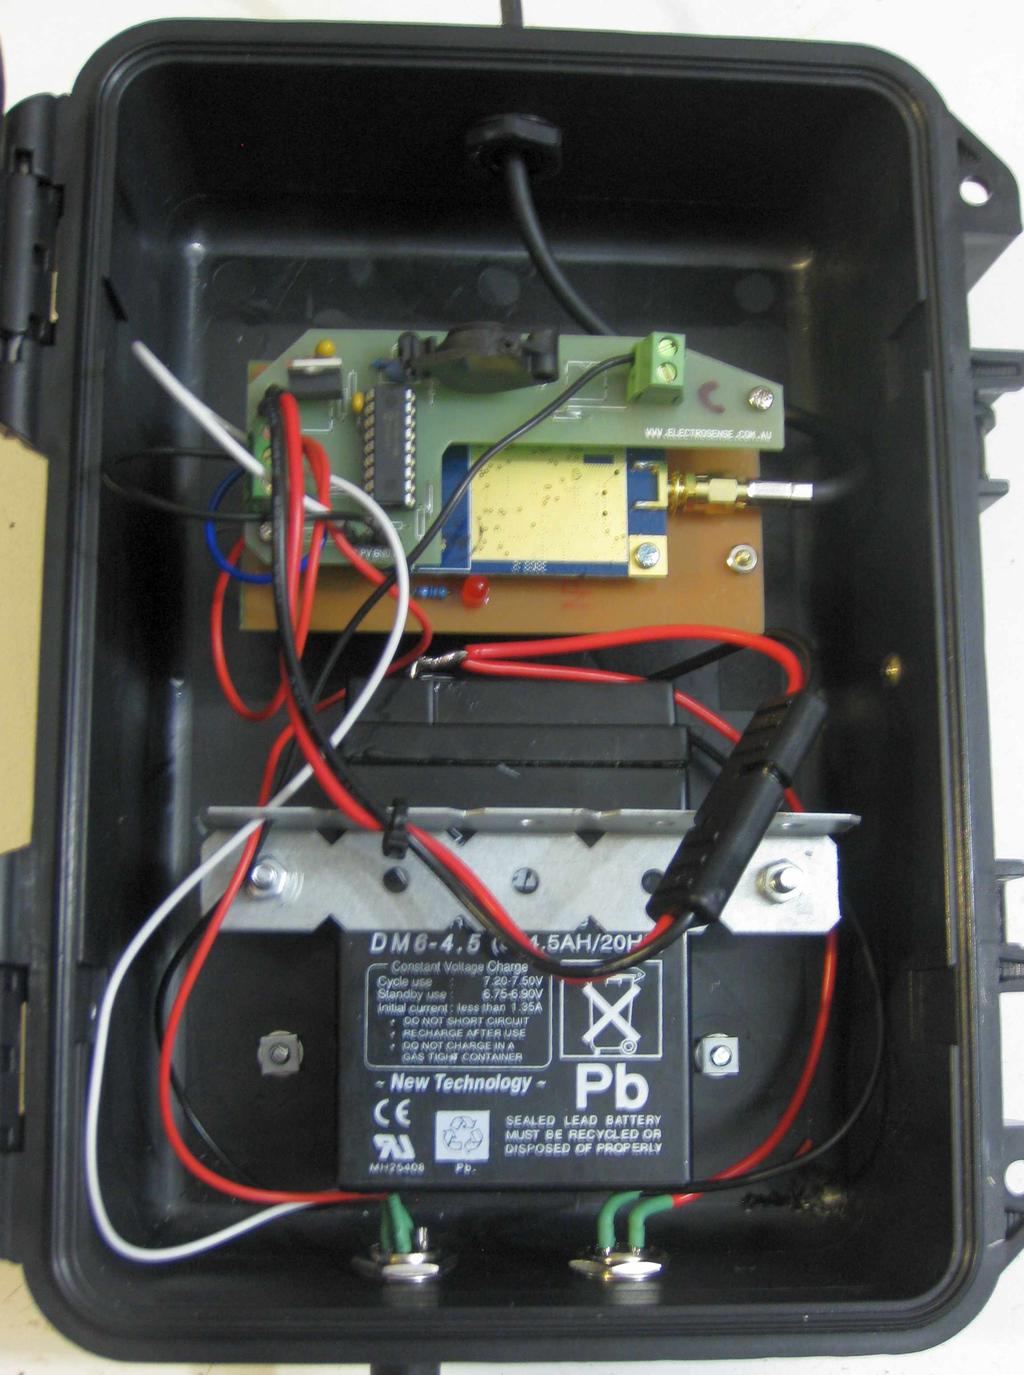 Power connectors Figure 1.